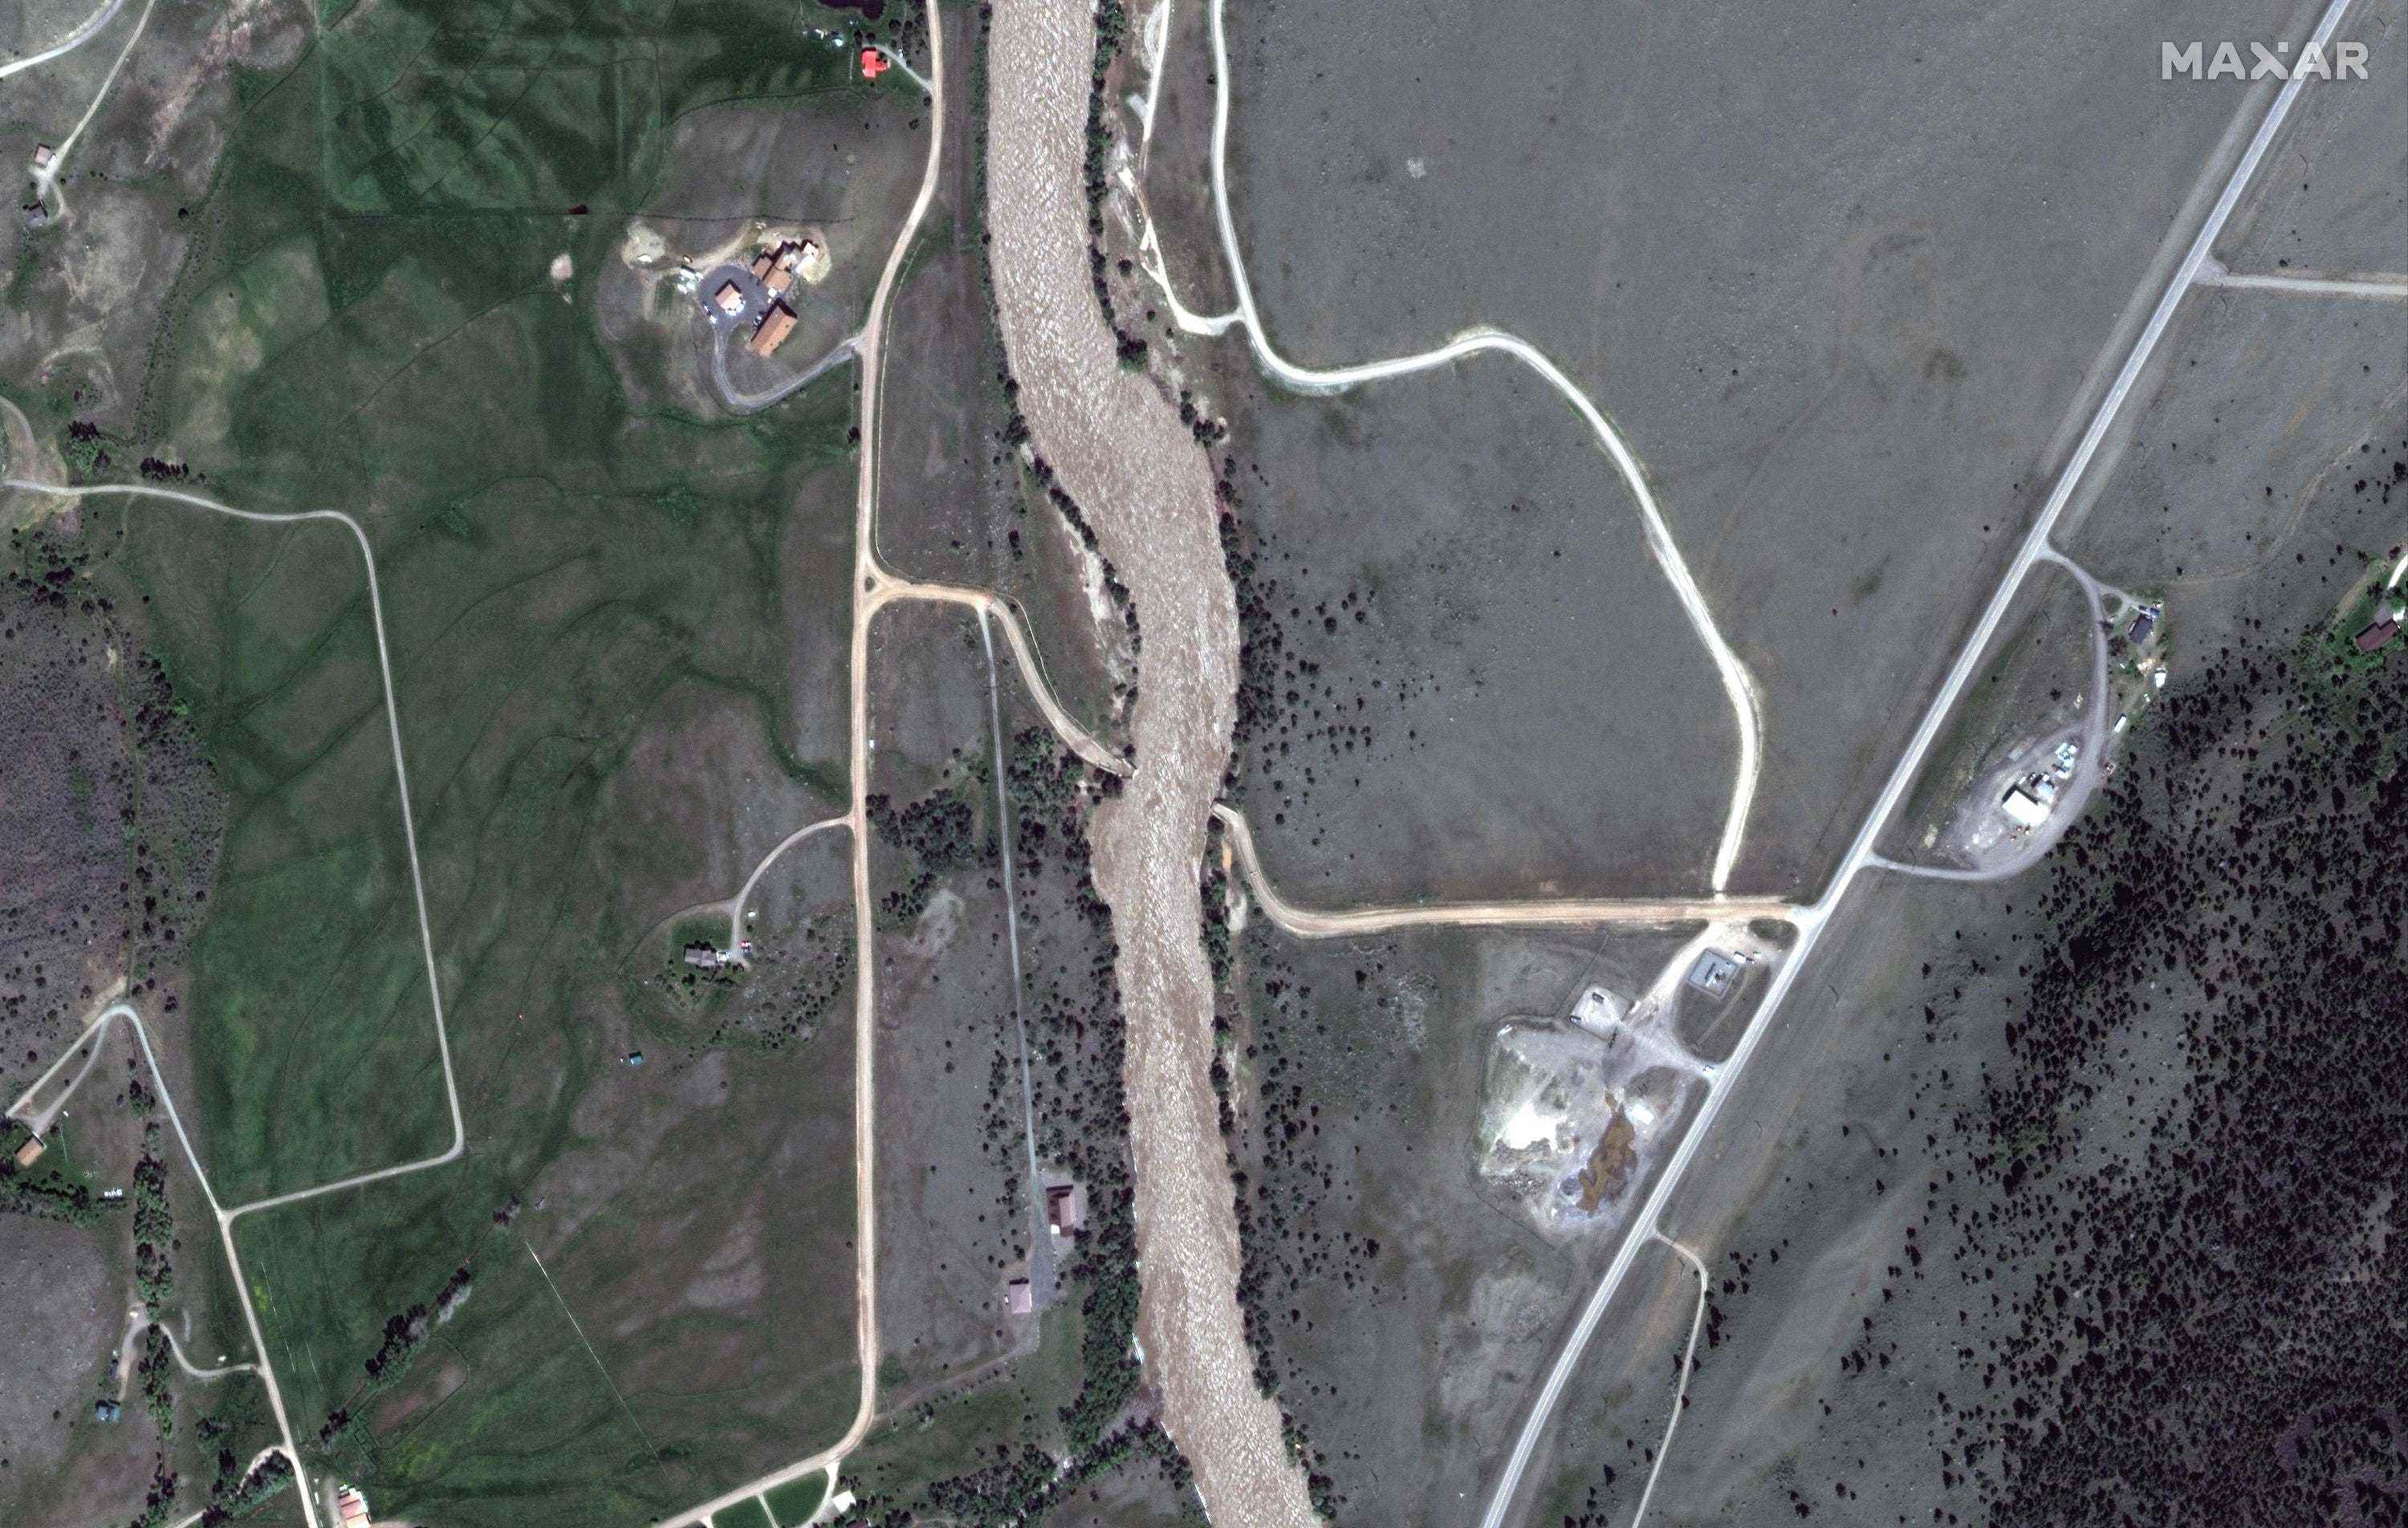 satellitenbild weiß grau braun angeschwollener yellowstone river mit straßenbrücke weg